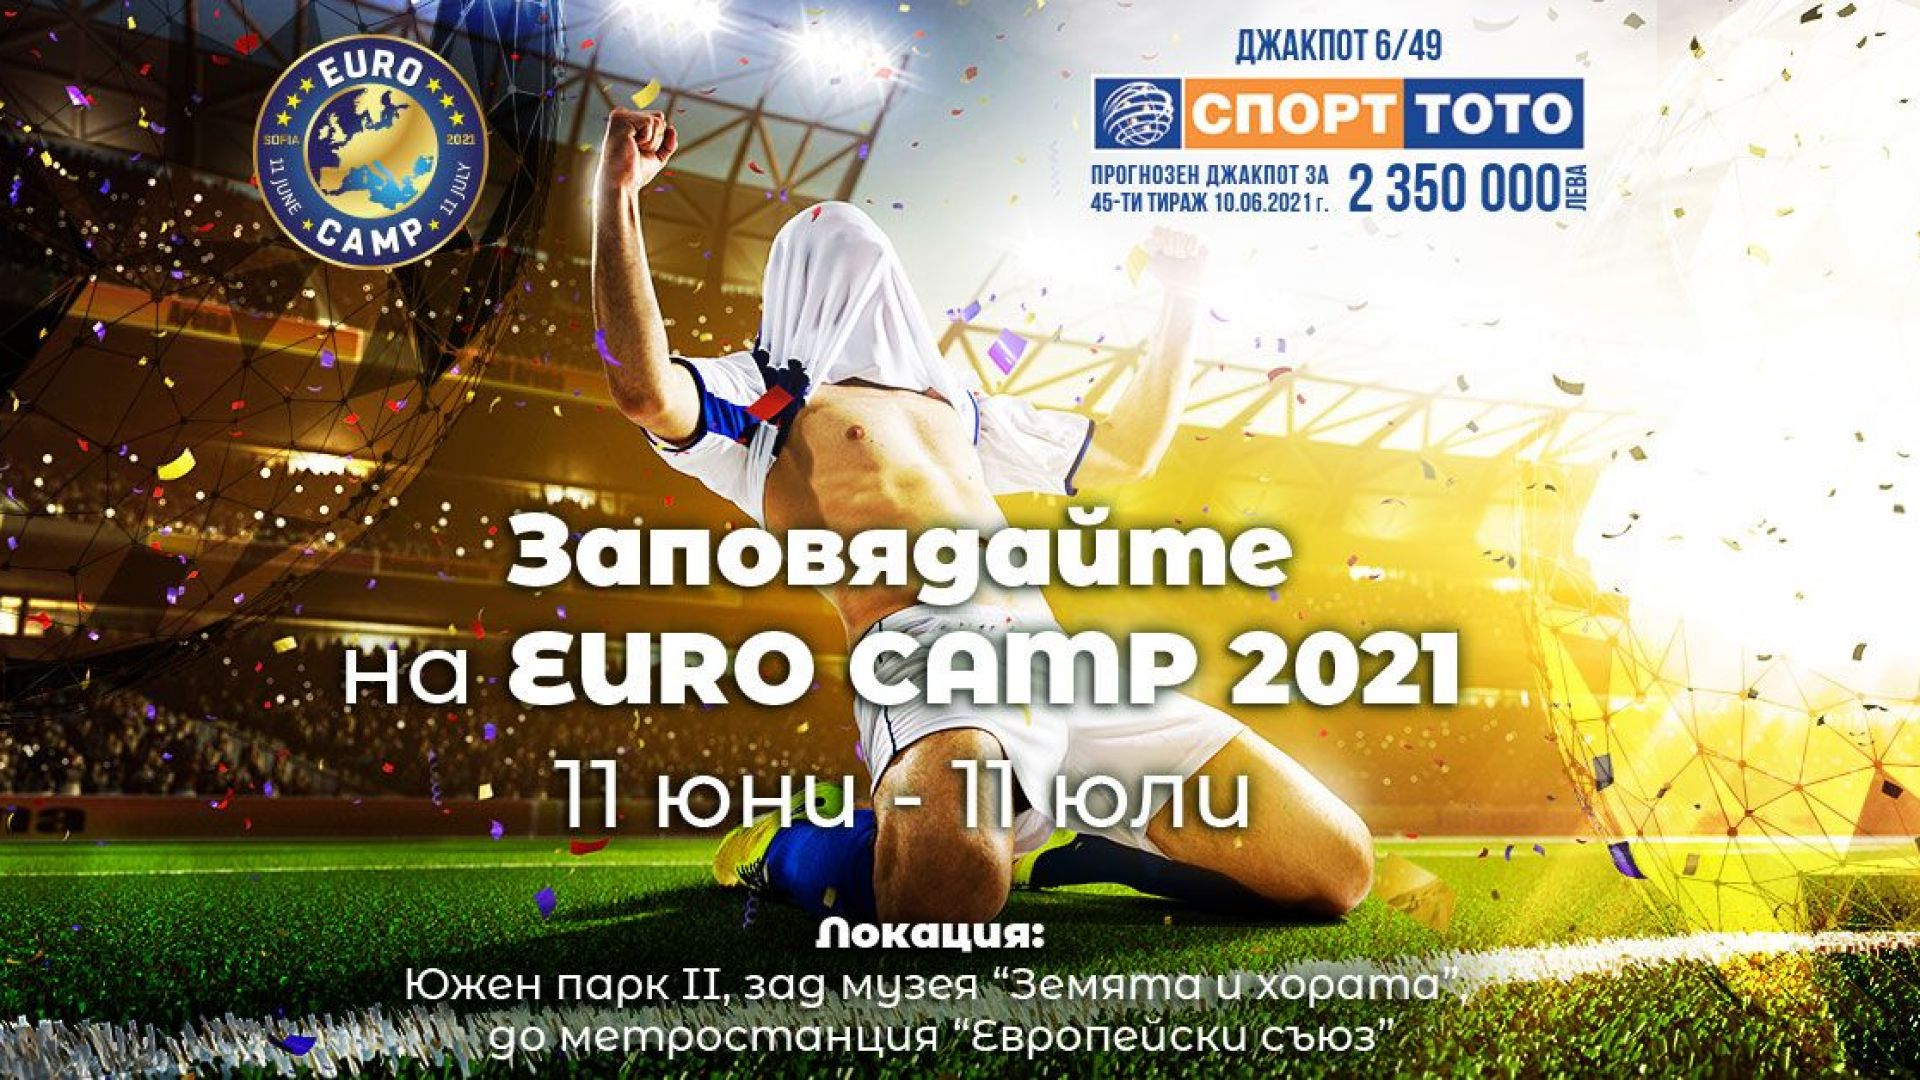 Евро 2021 идва под открито небе в центъра на София с EURO CAMP и Спорт Тото